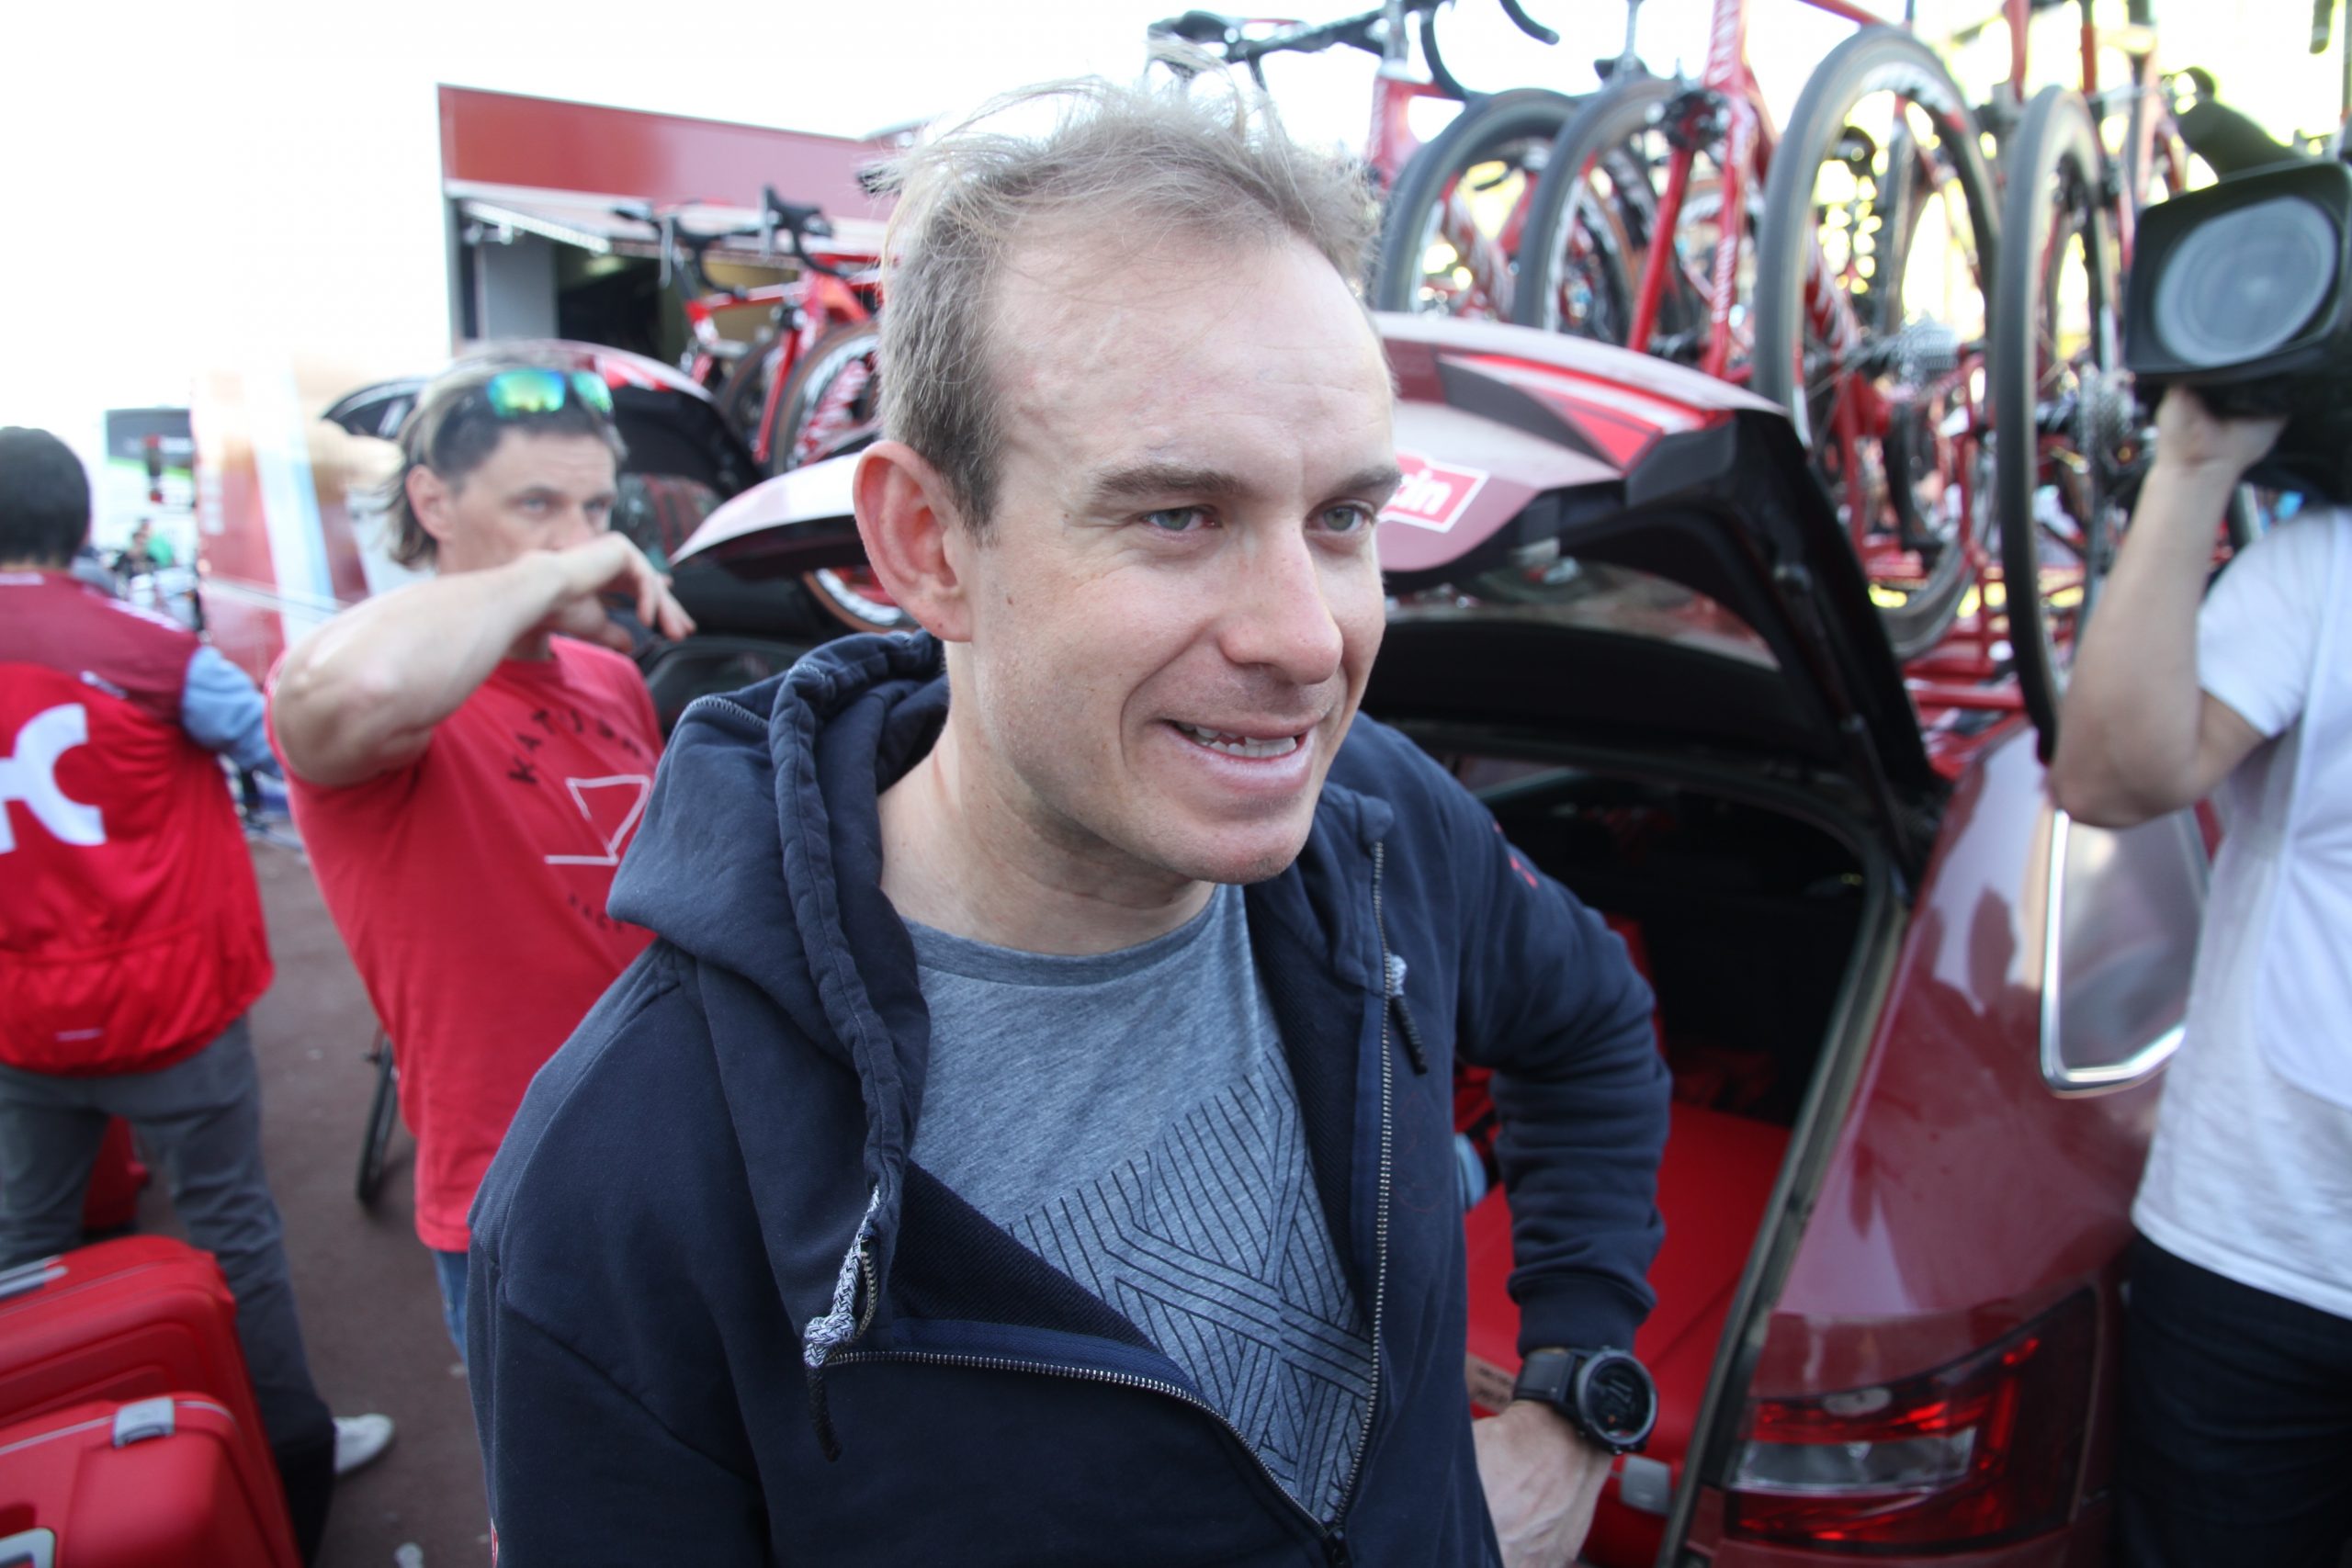 Kristoffs sjef mener Roubaix er lagets største sjanse